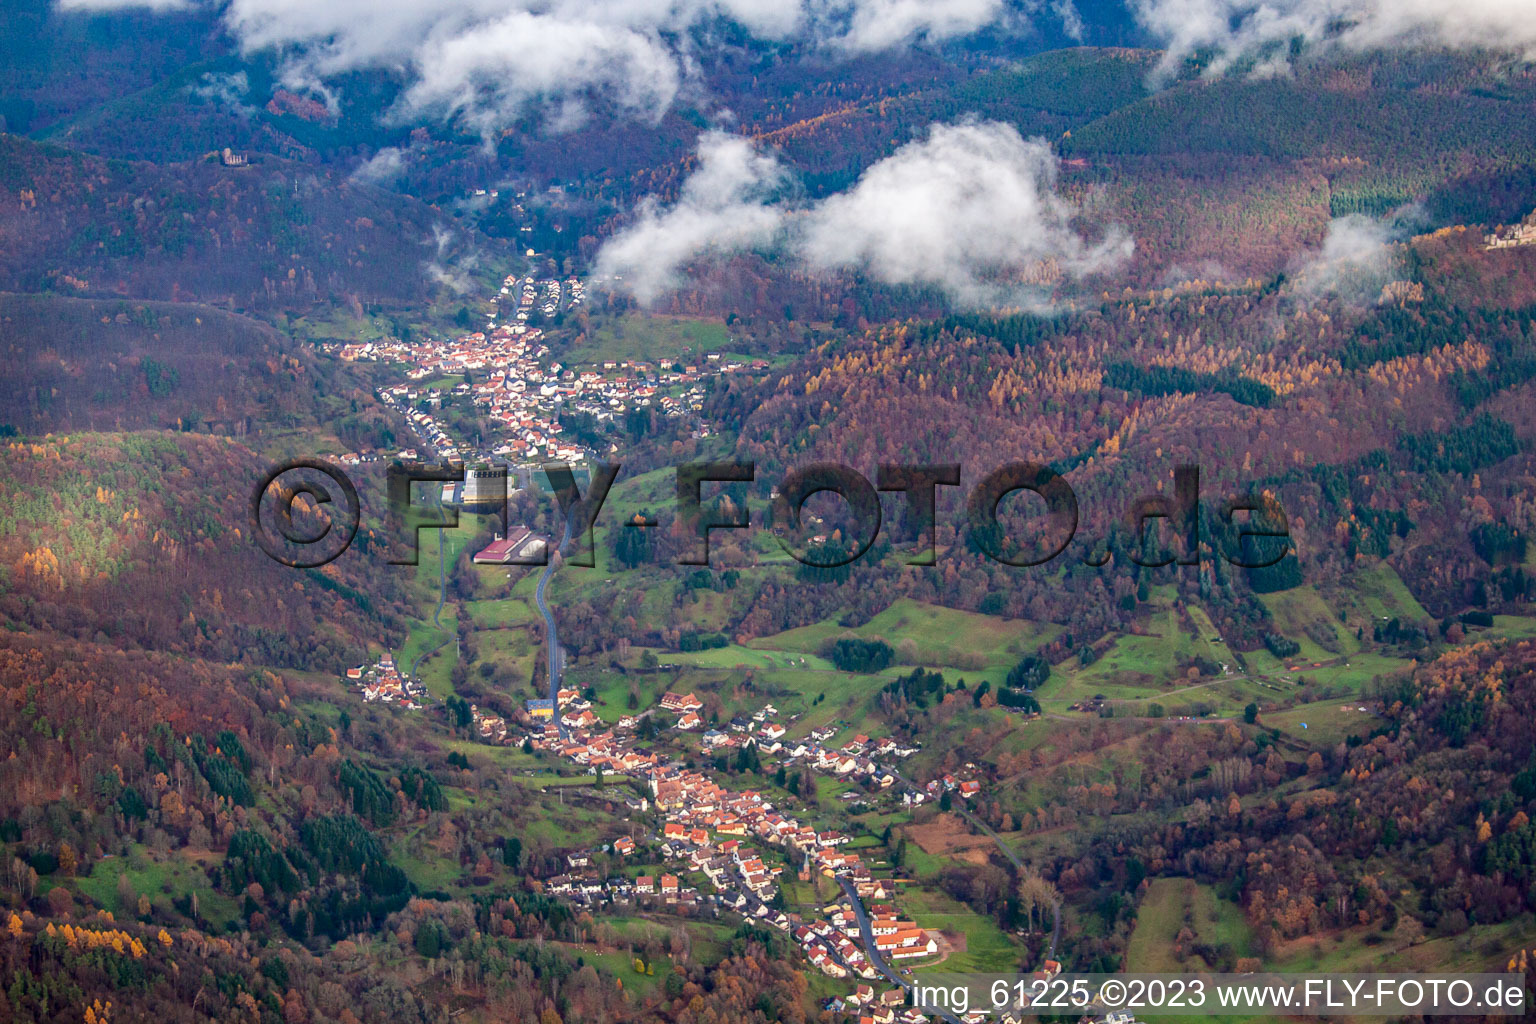 Dernbach Valley in Dernbach in the state Rhineland-Palatinate, Germany